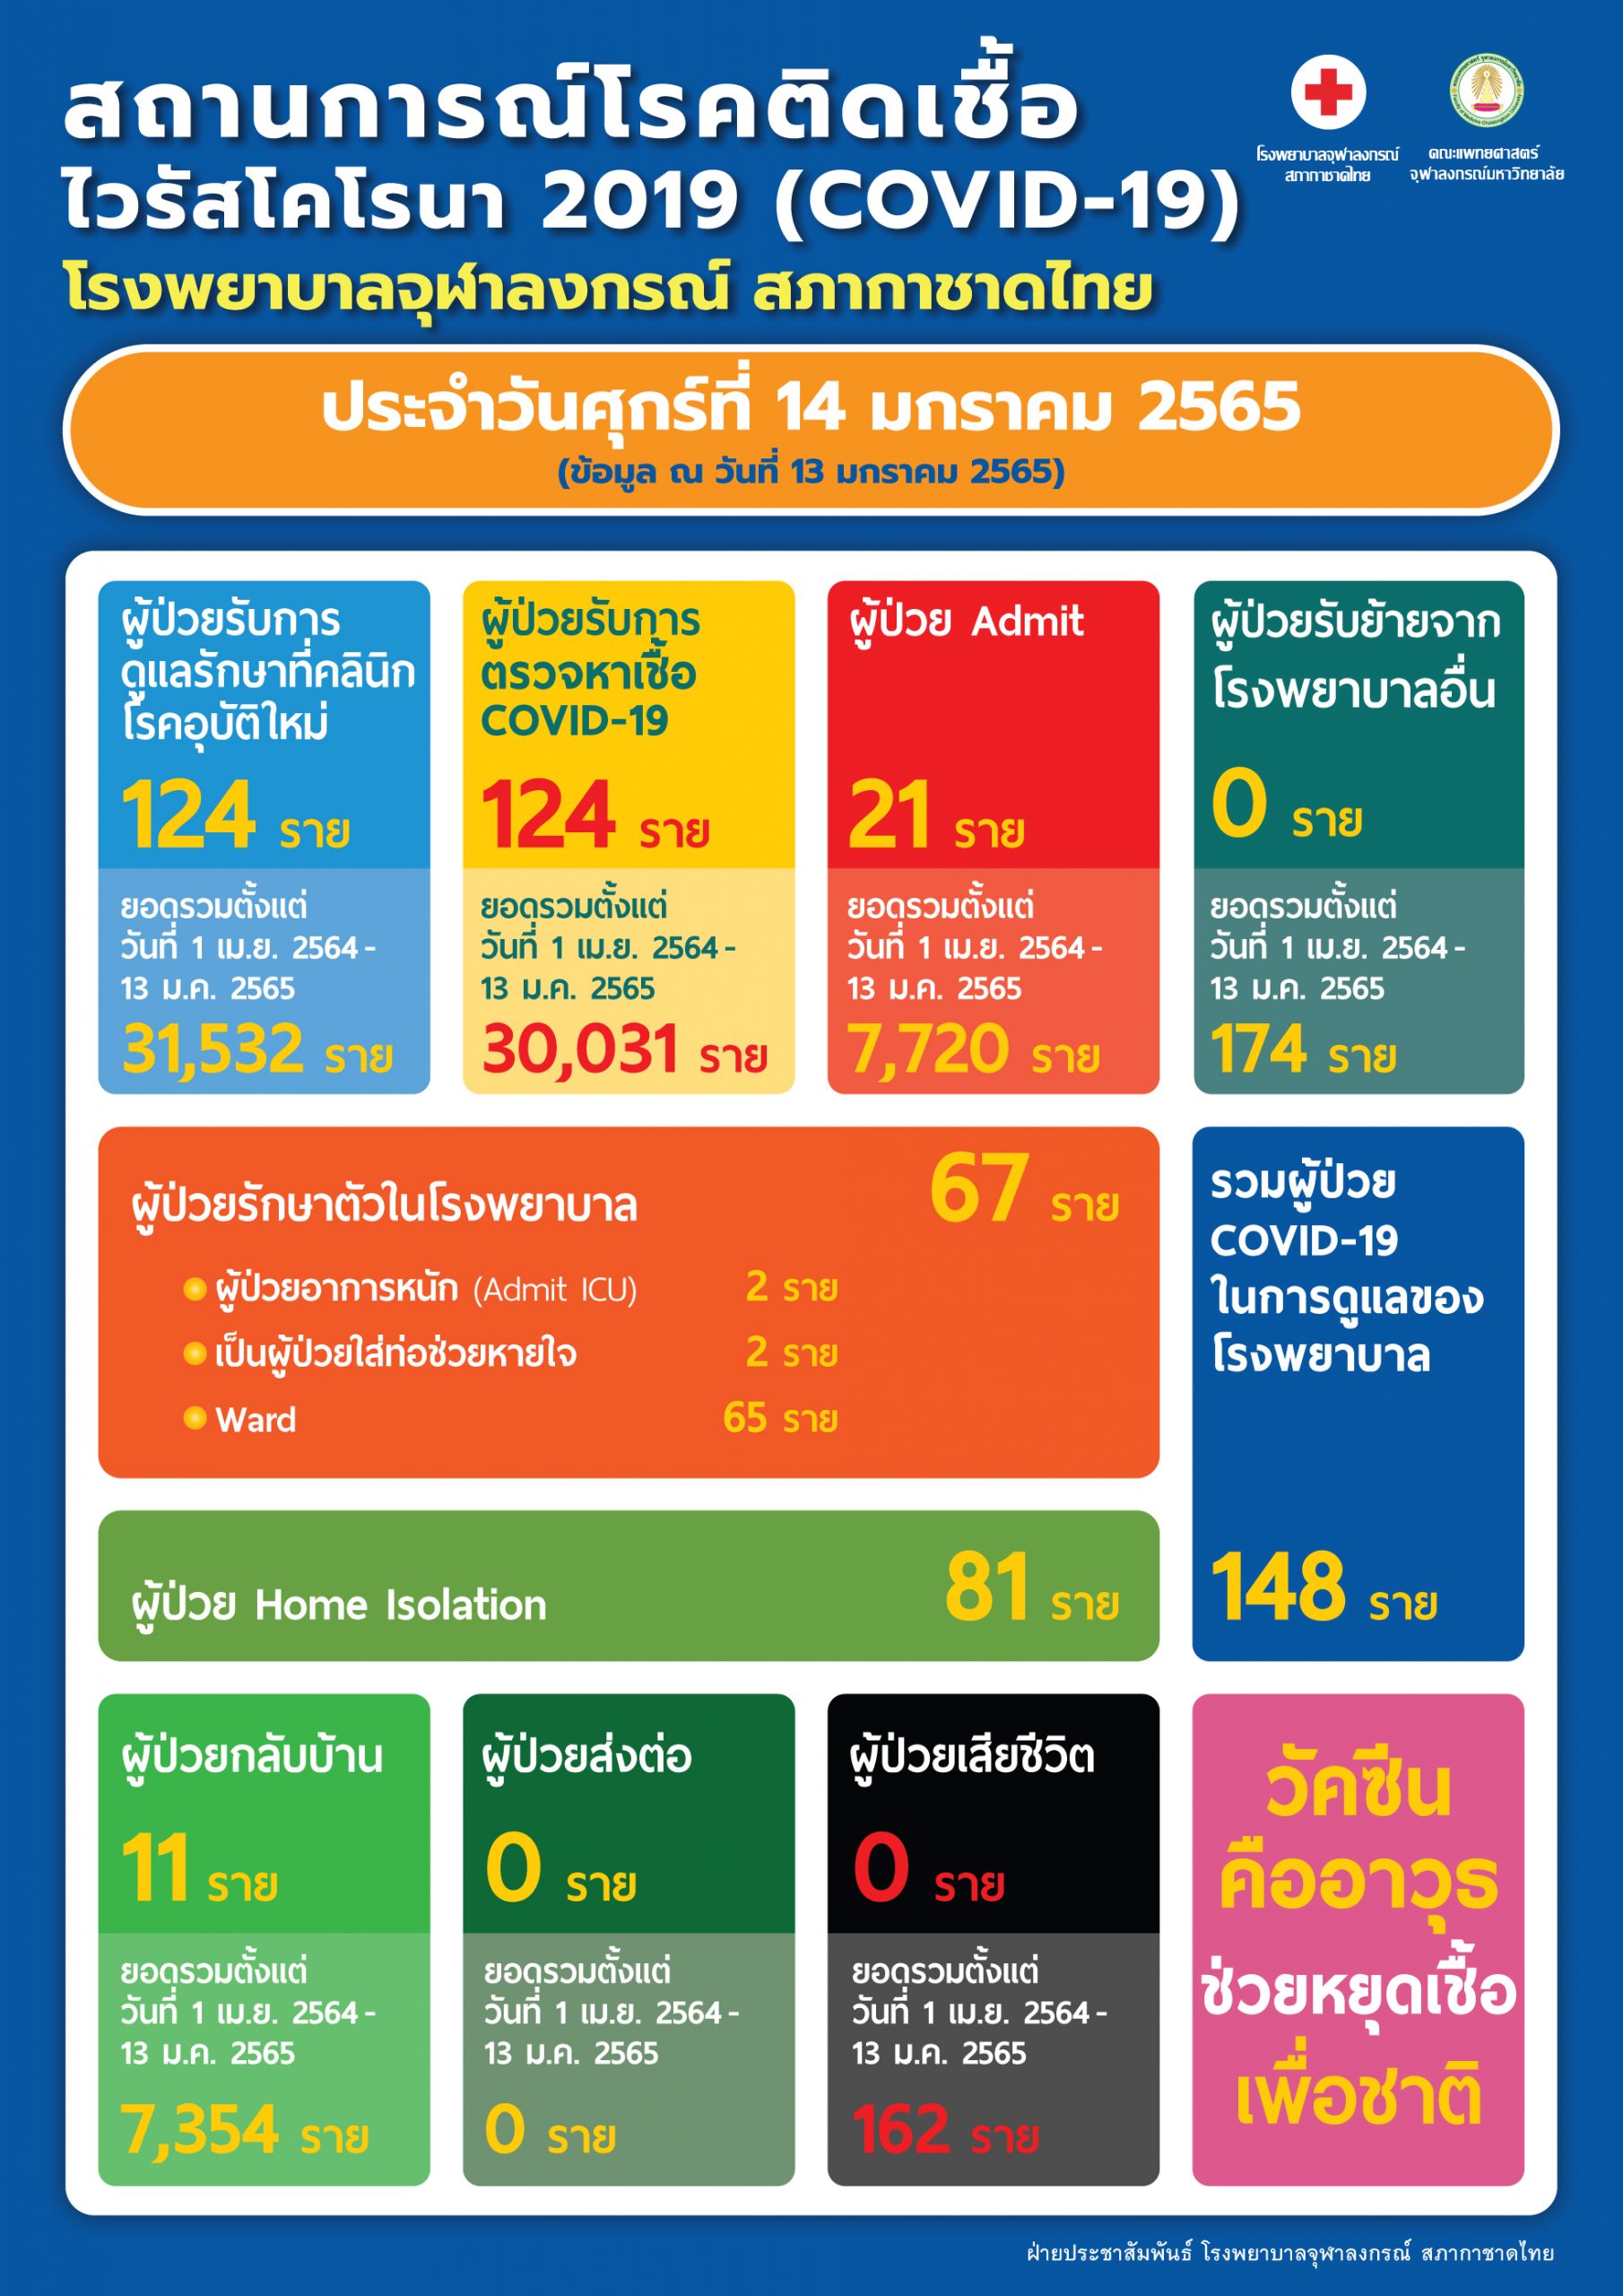 สถานการณ์โรคติดเชื้อไวรัสโคโรนา 2019 (COVID-19) โรงพยาบาลจุฬาลงกรณ์ สภากาชาดไทย ประจำวันศุกร์ที่ 14 มกราคม 2565